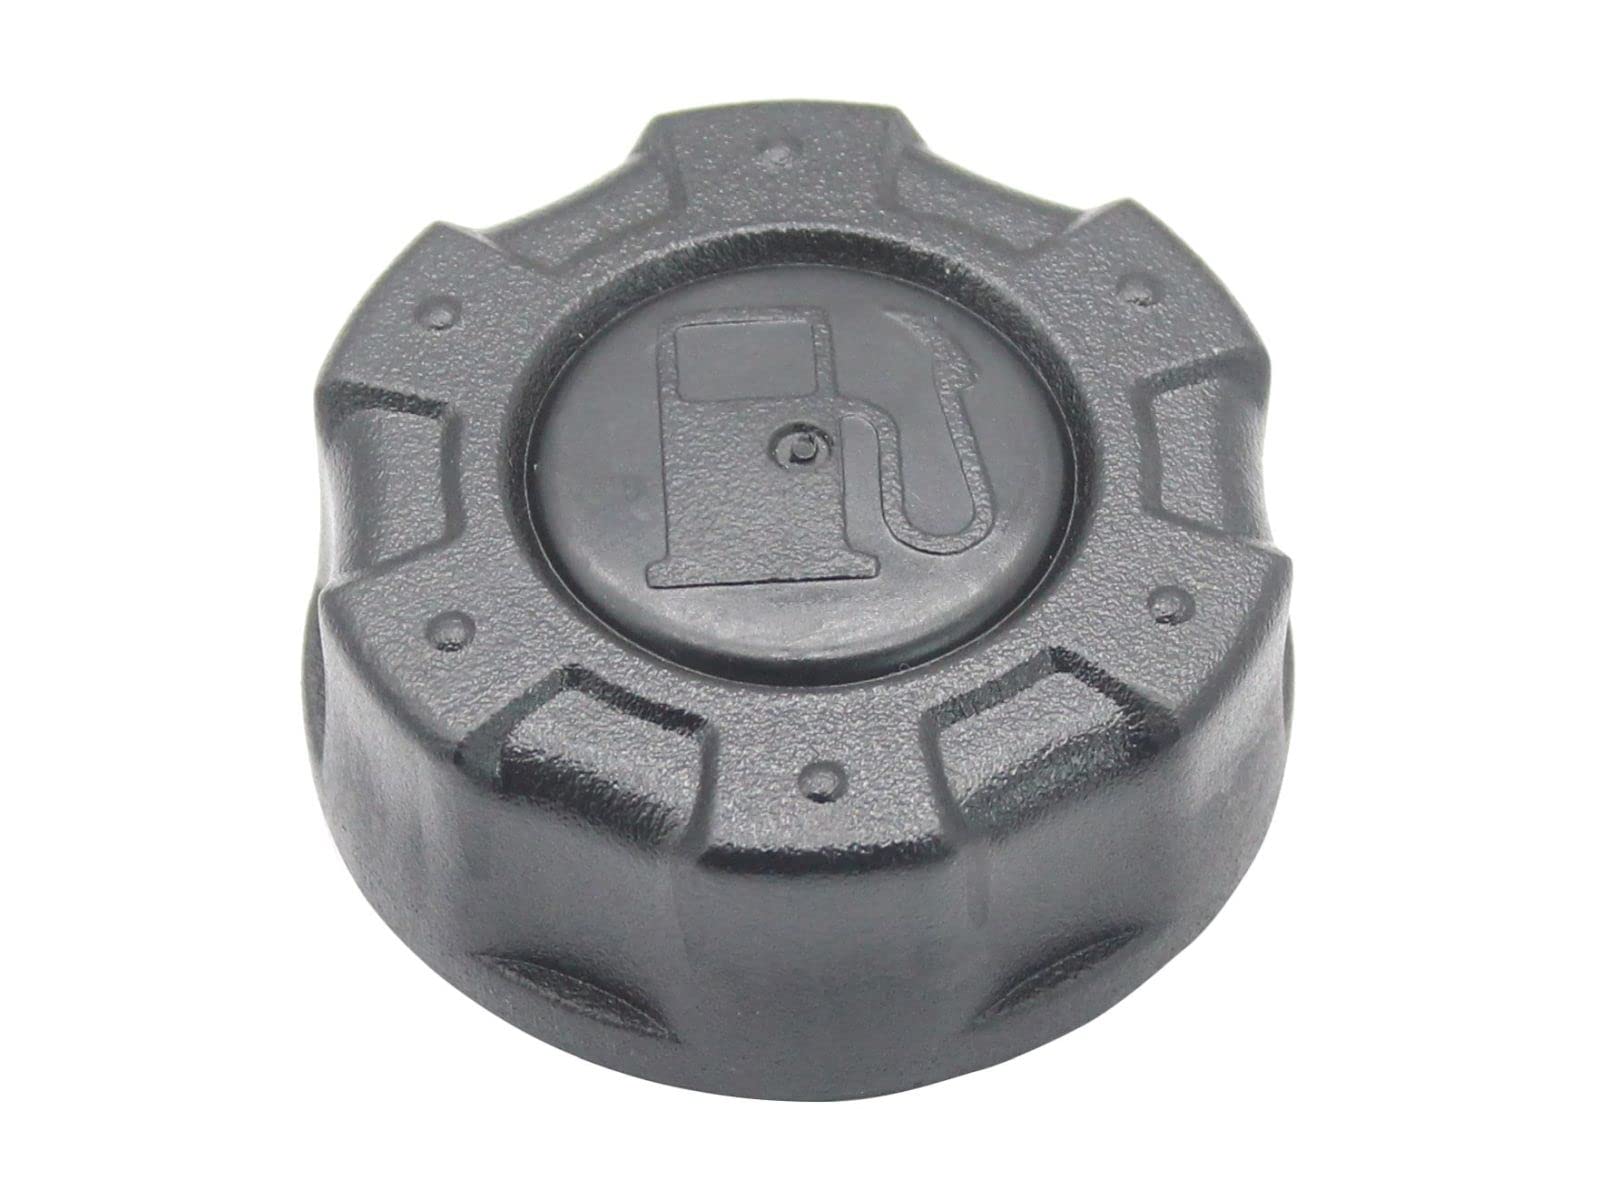 SECURA Tankdeckel kompatibel mit Loncin Stiga Tankstutzen Durchmesser 45mm 1708700940001 von SECURA